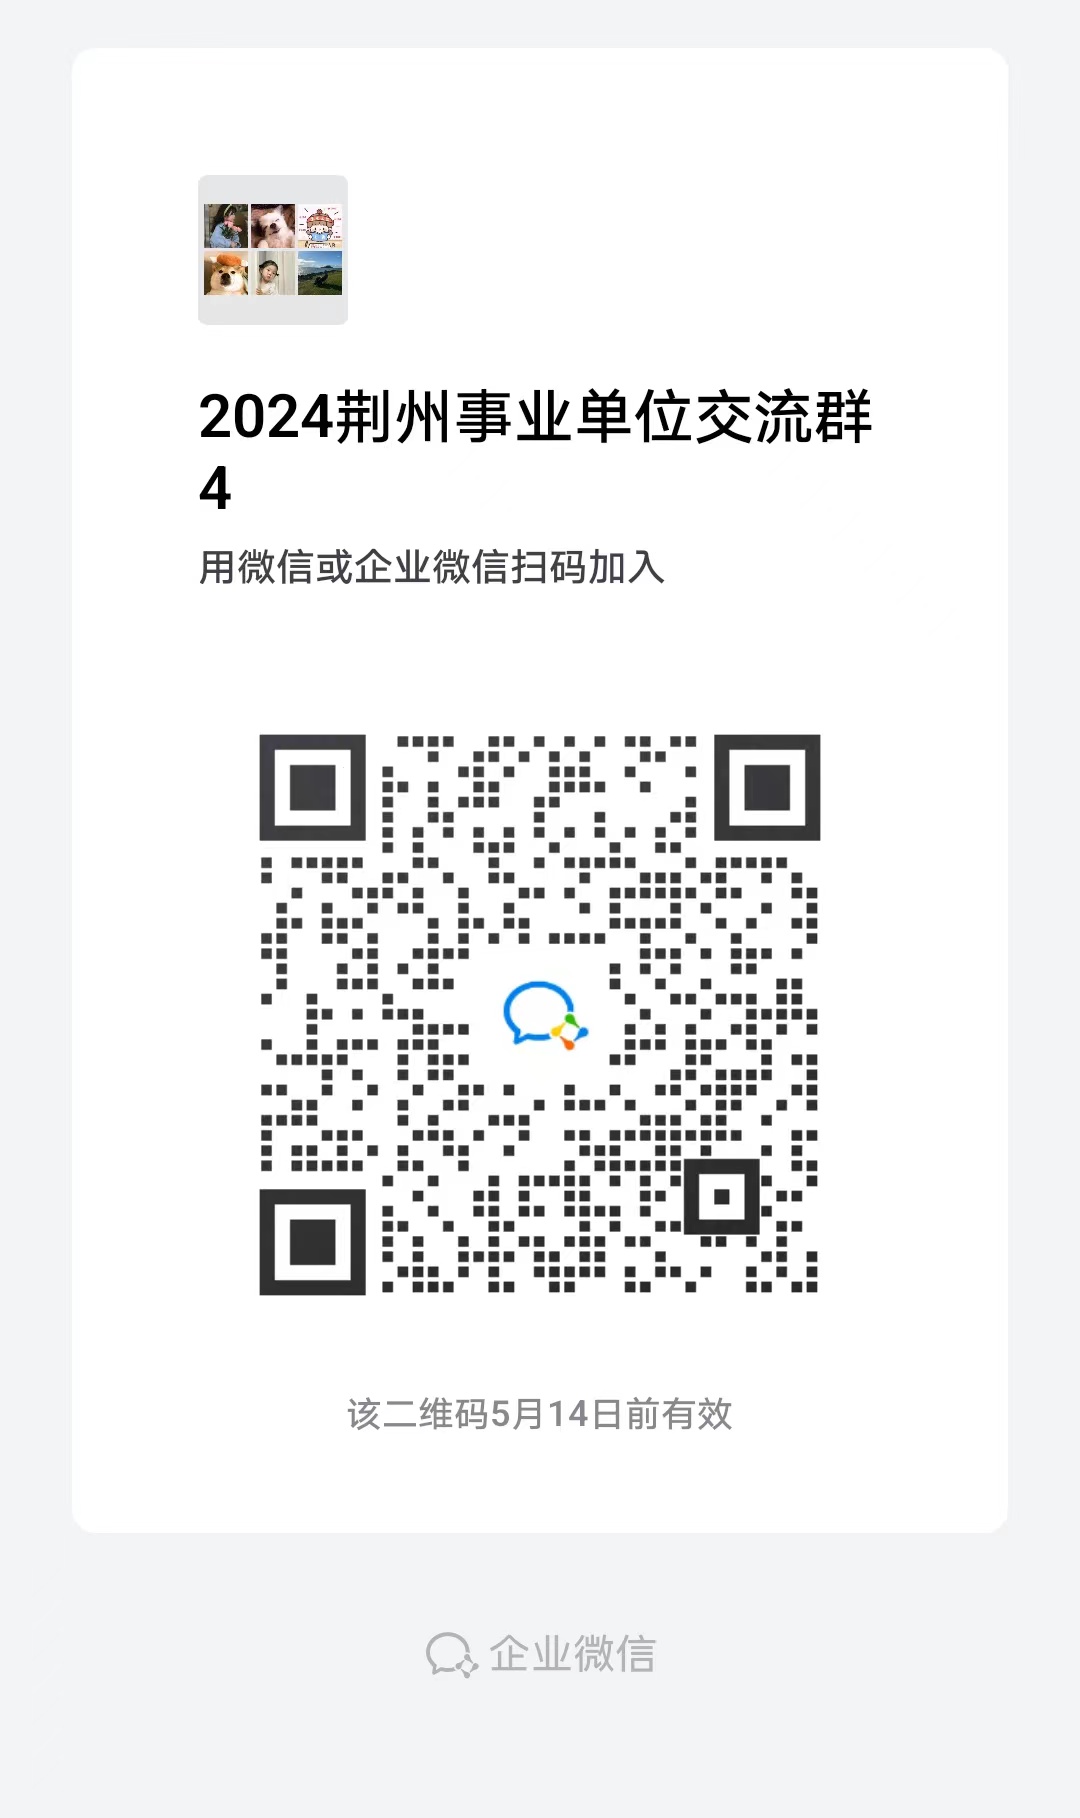 2024年荆州洪湖市事业单位统一公开招聘工作人员资格复审公告